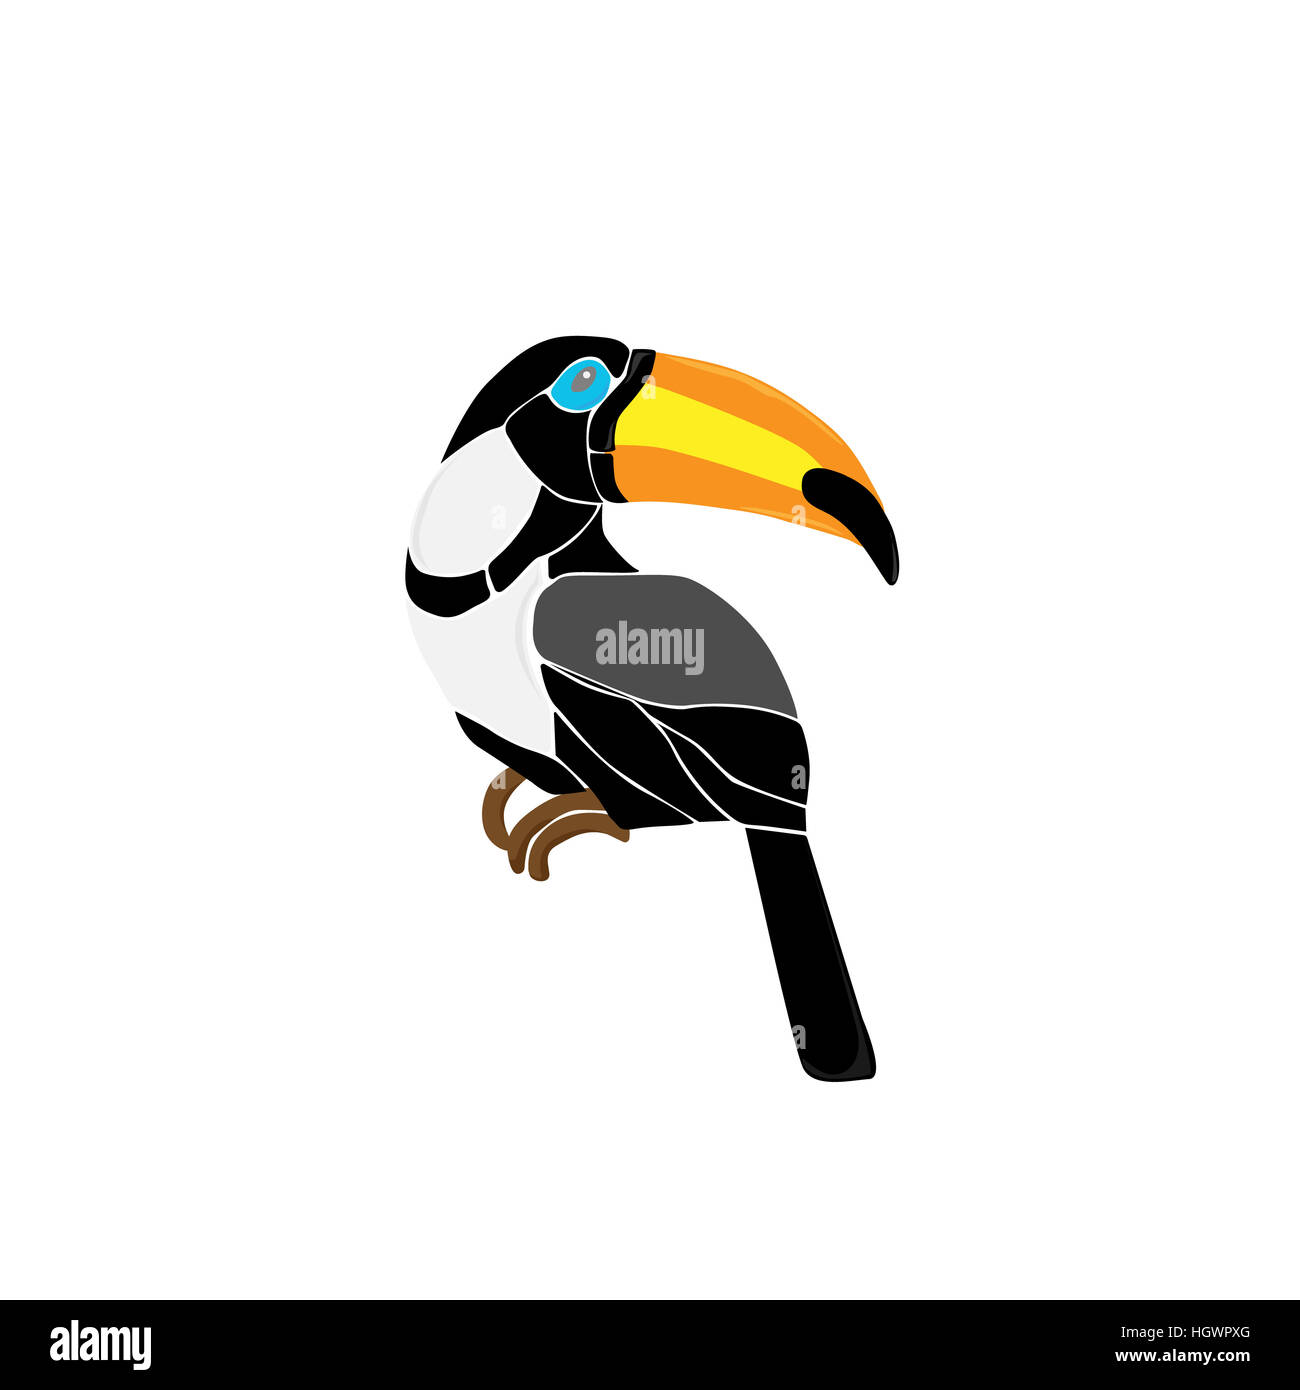 Hand drawn toucan coin sur une branche d'arbre, colorée de style croquis illustration isolé sur fond blanc. Dessin à la main de toucan, scientifique ornit Banque D'Images